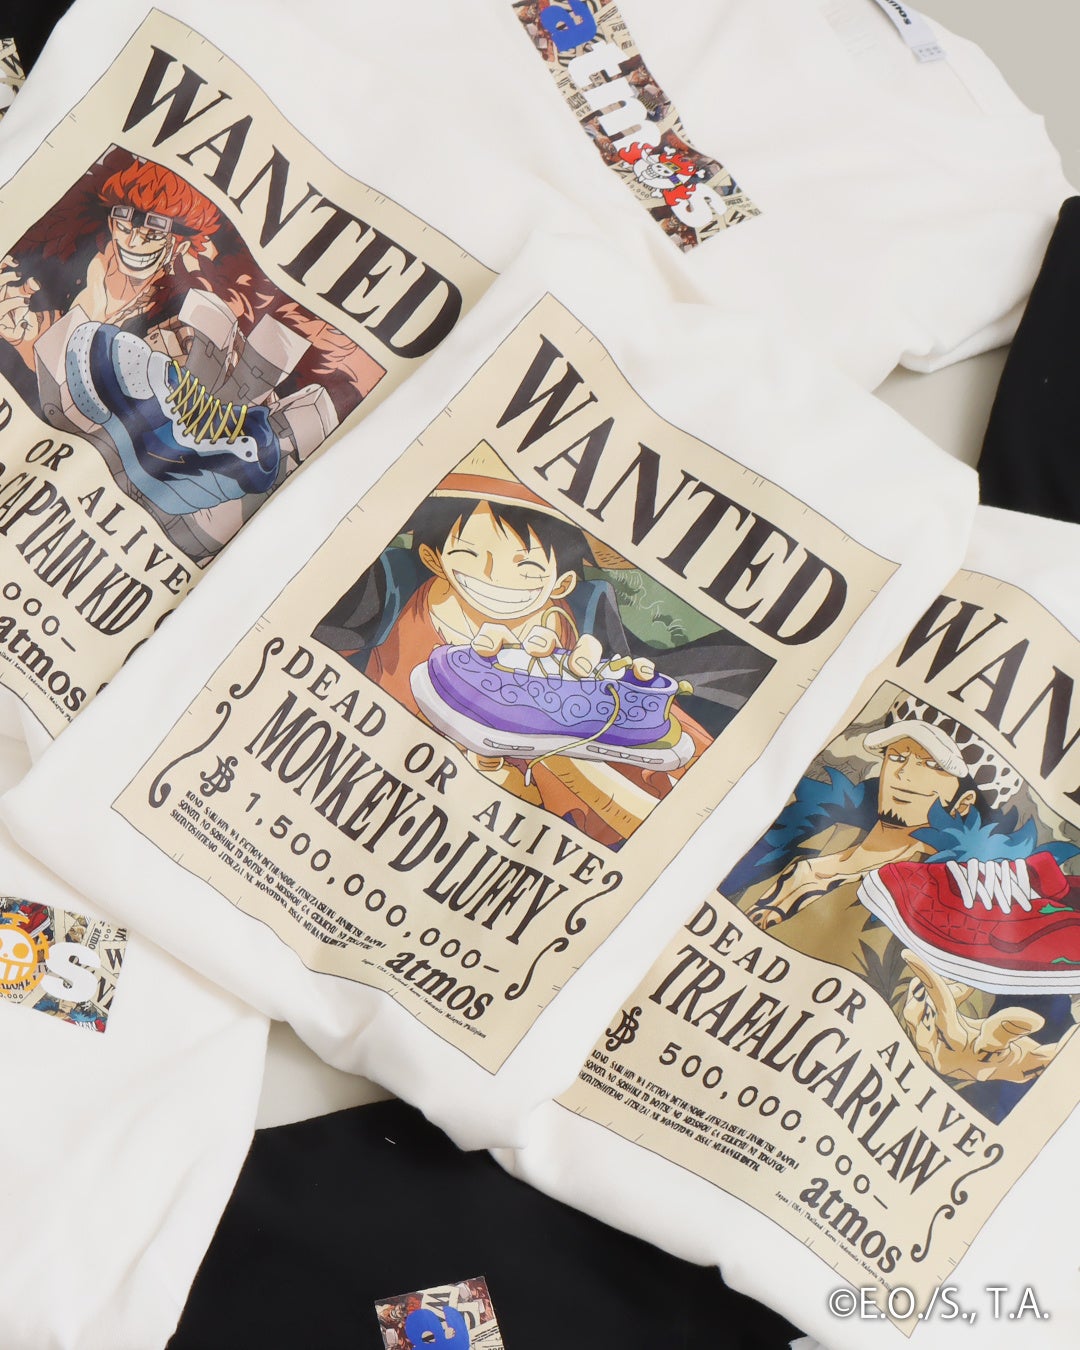 人気漫画「ONE PIECE」と「atmos」によるコラボレーションTシャツが登場。7月22日(土)〜7月30日(日)までatmos表参道、atmos京都にてPOP UP STOREも開催決定。